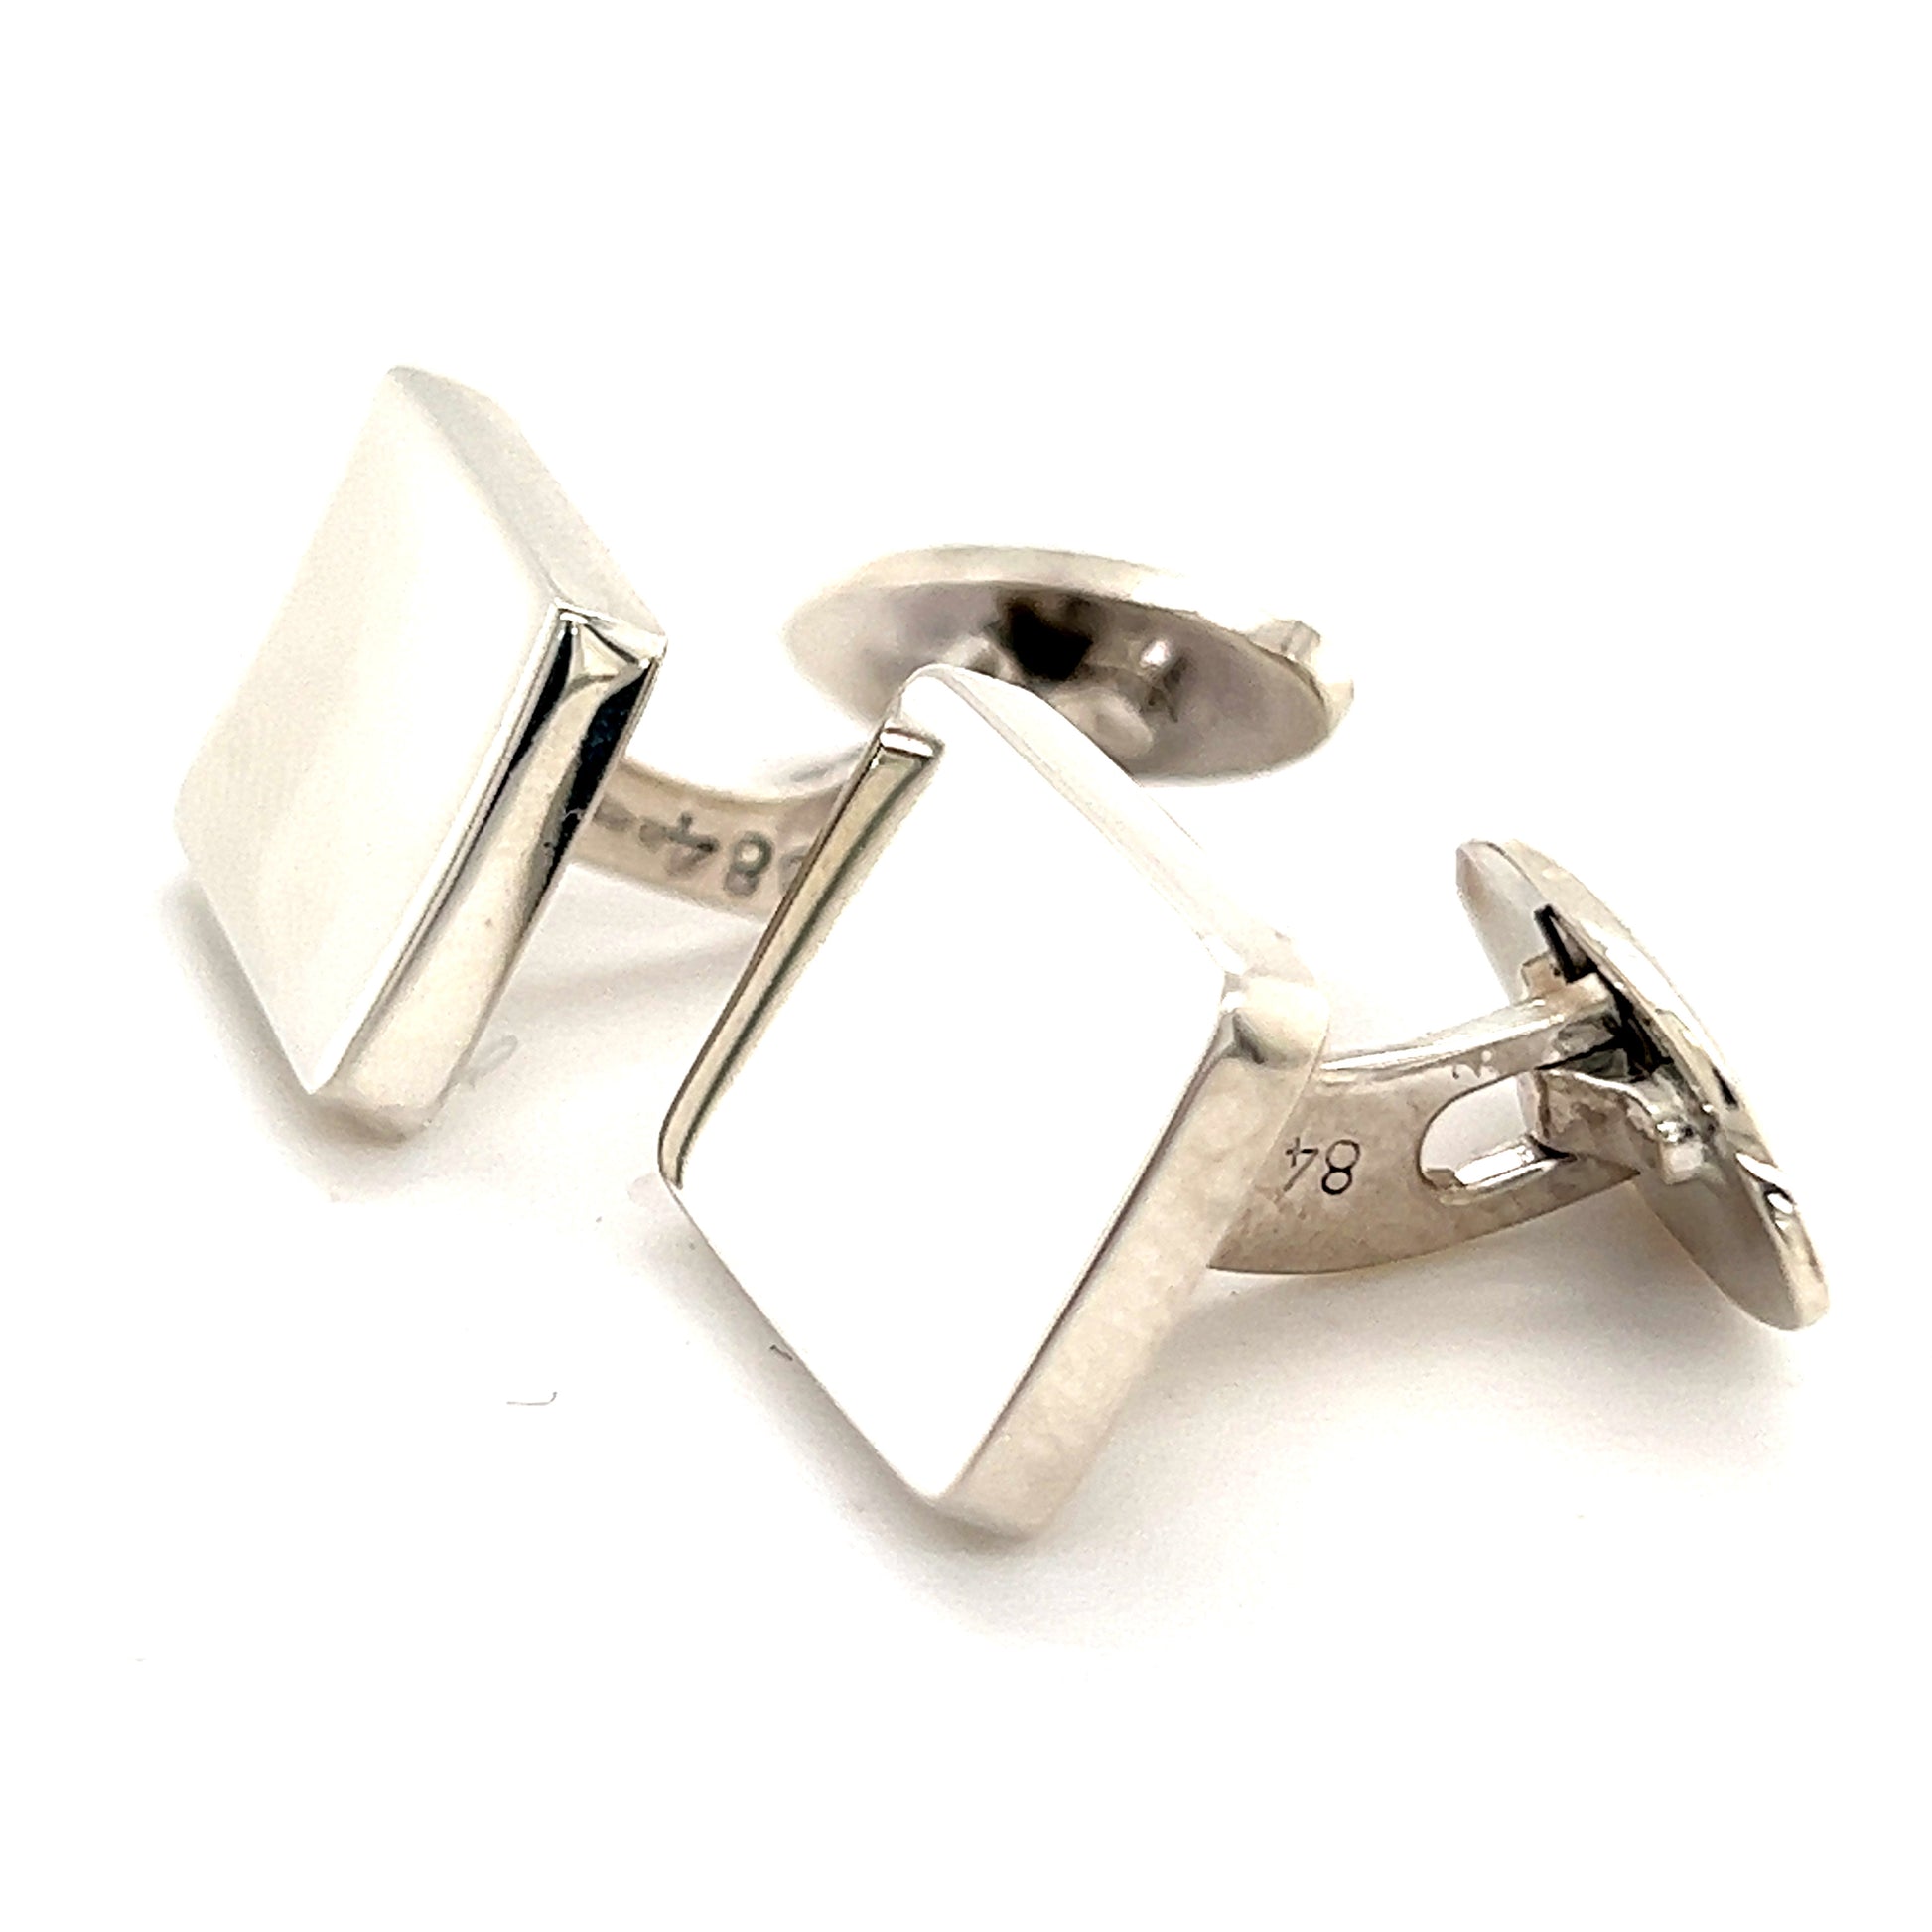 Georg Jensen Estate Sterling Silver Cufflinks 17.5 Grams GJ10 - Certified Fine Jewelry